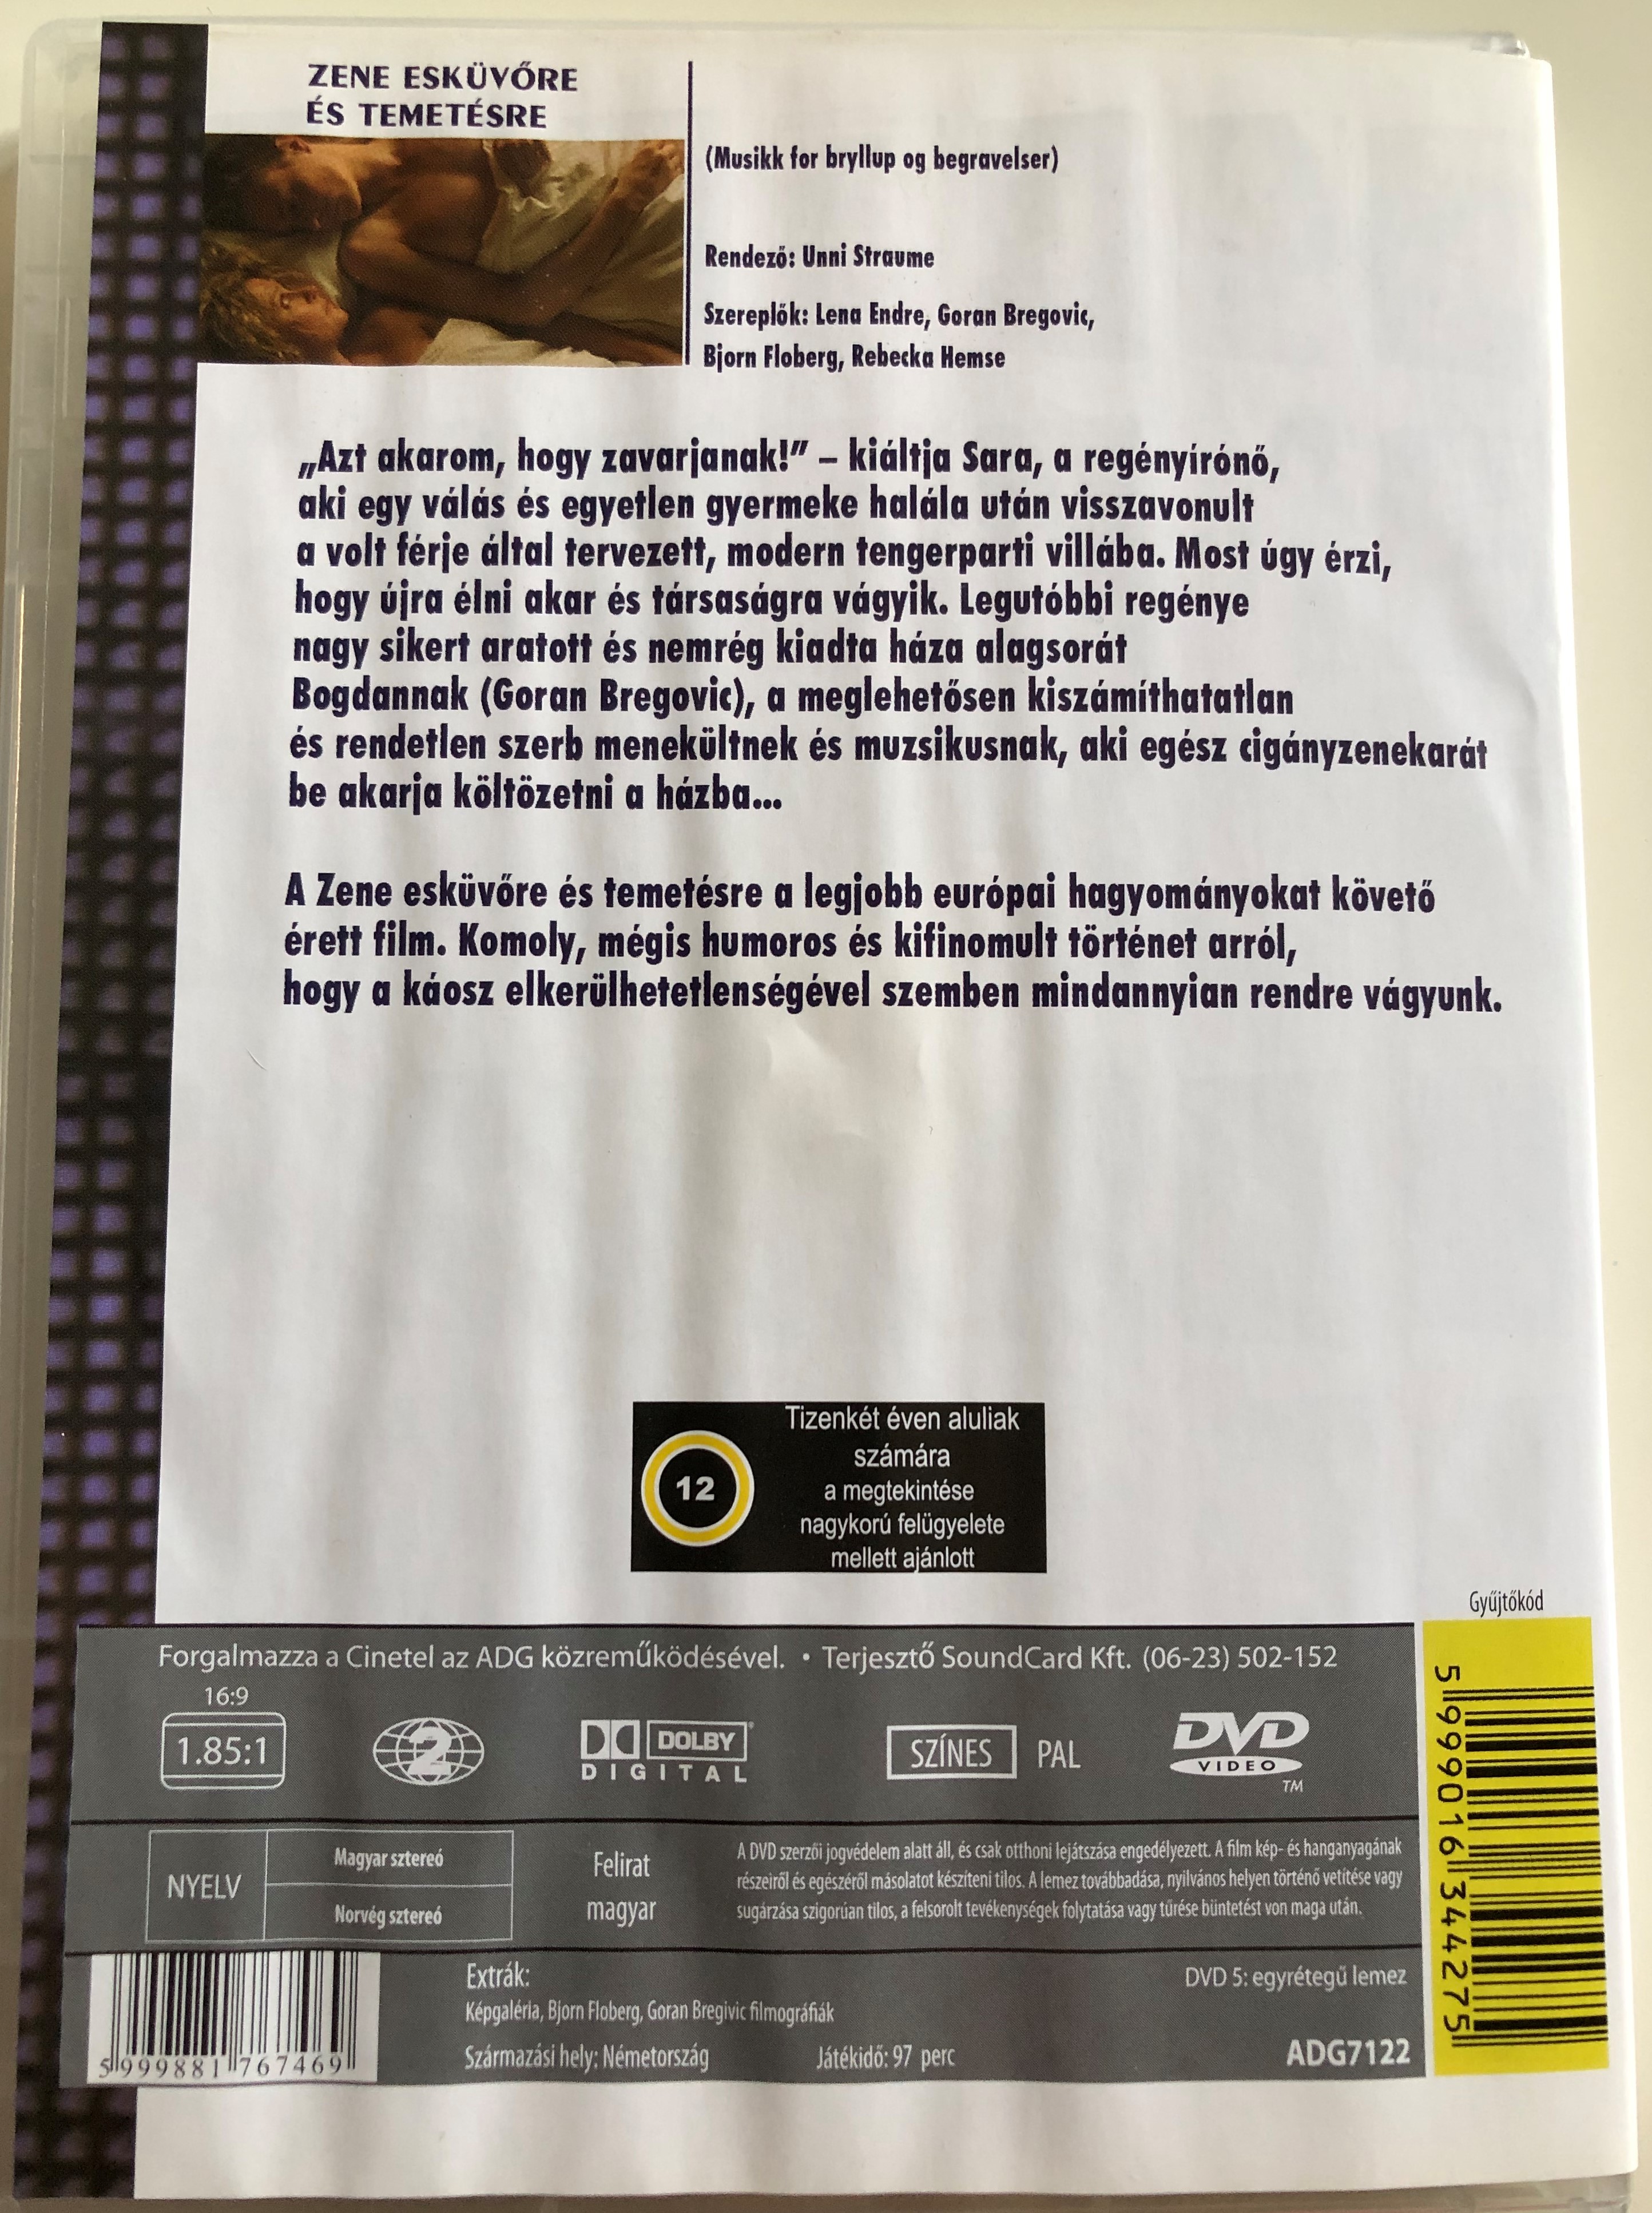 Musikk for bryllup og begravelser DVD 2002 Zene esküvőre és temetésre 1